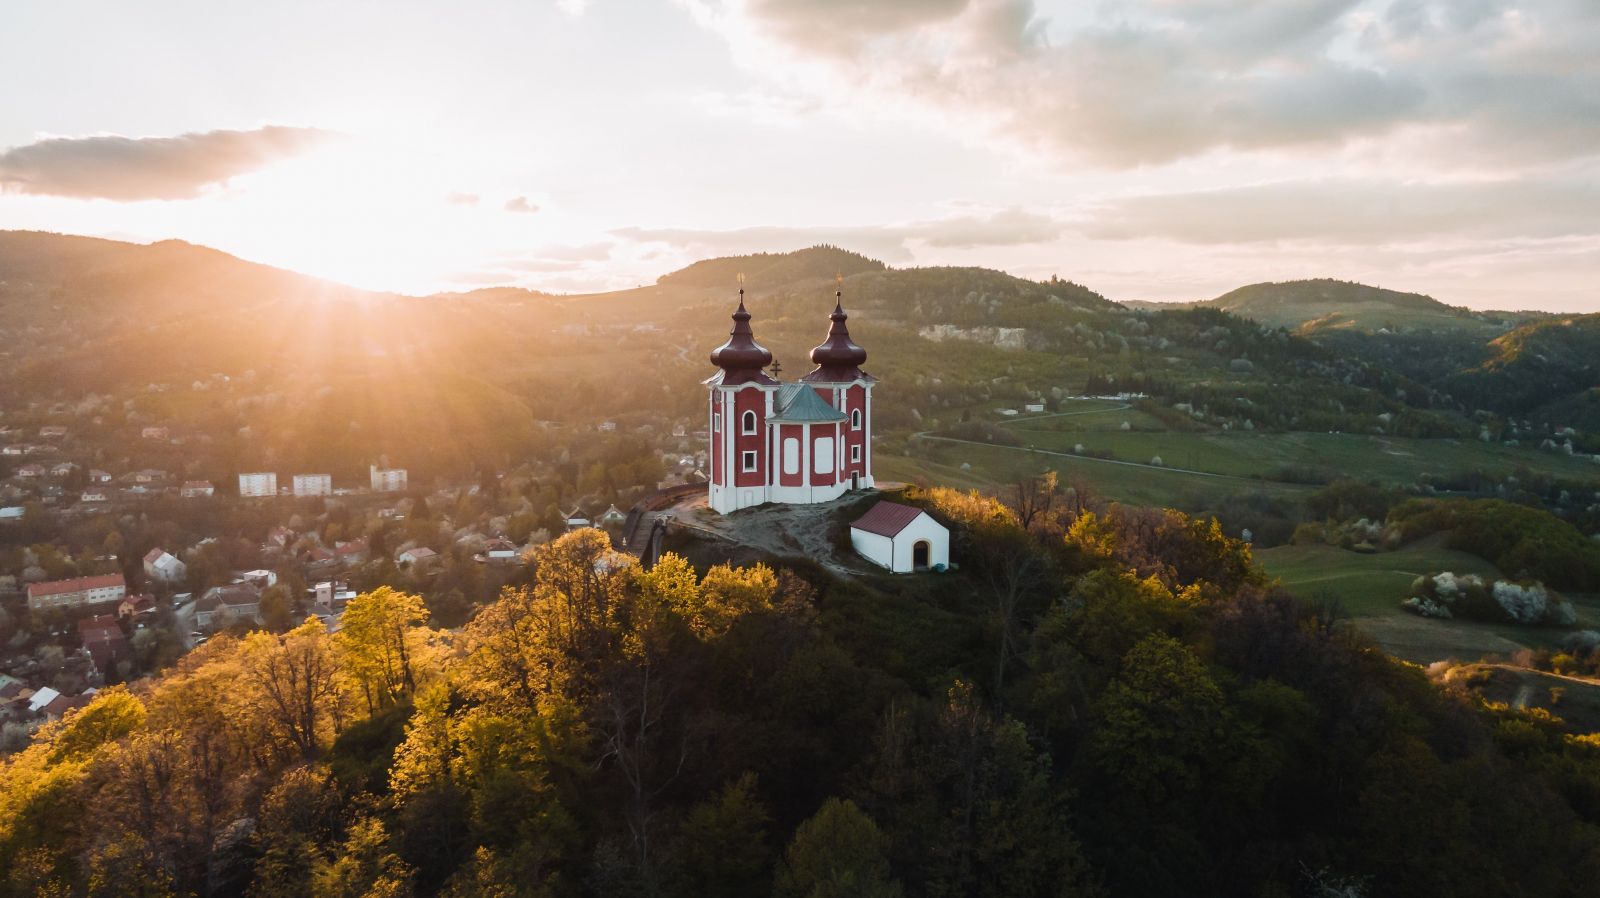 Tieto miesta patria k 5 najfotogenickejším miestam na Slovensku. Navštív ich ešte toto leto